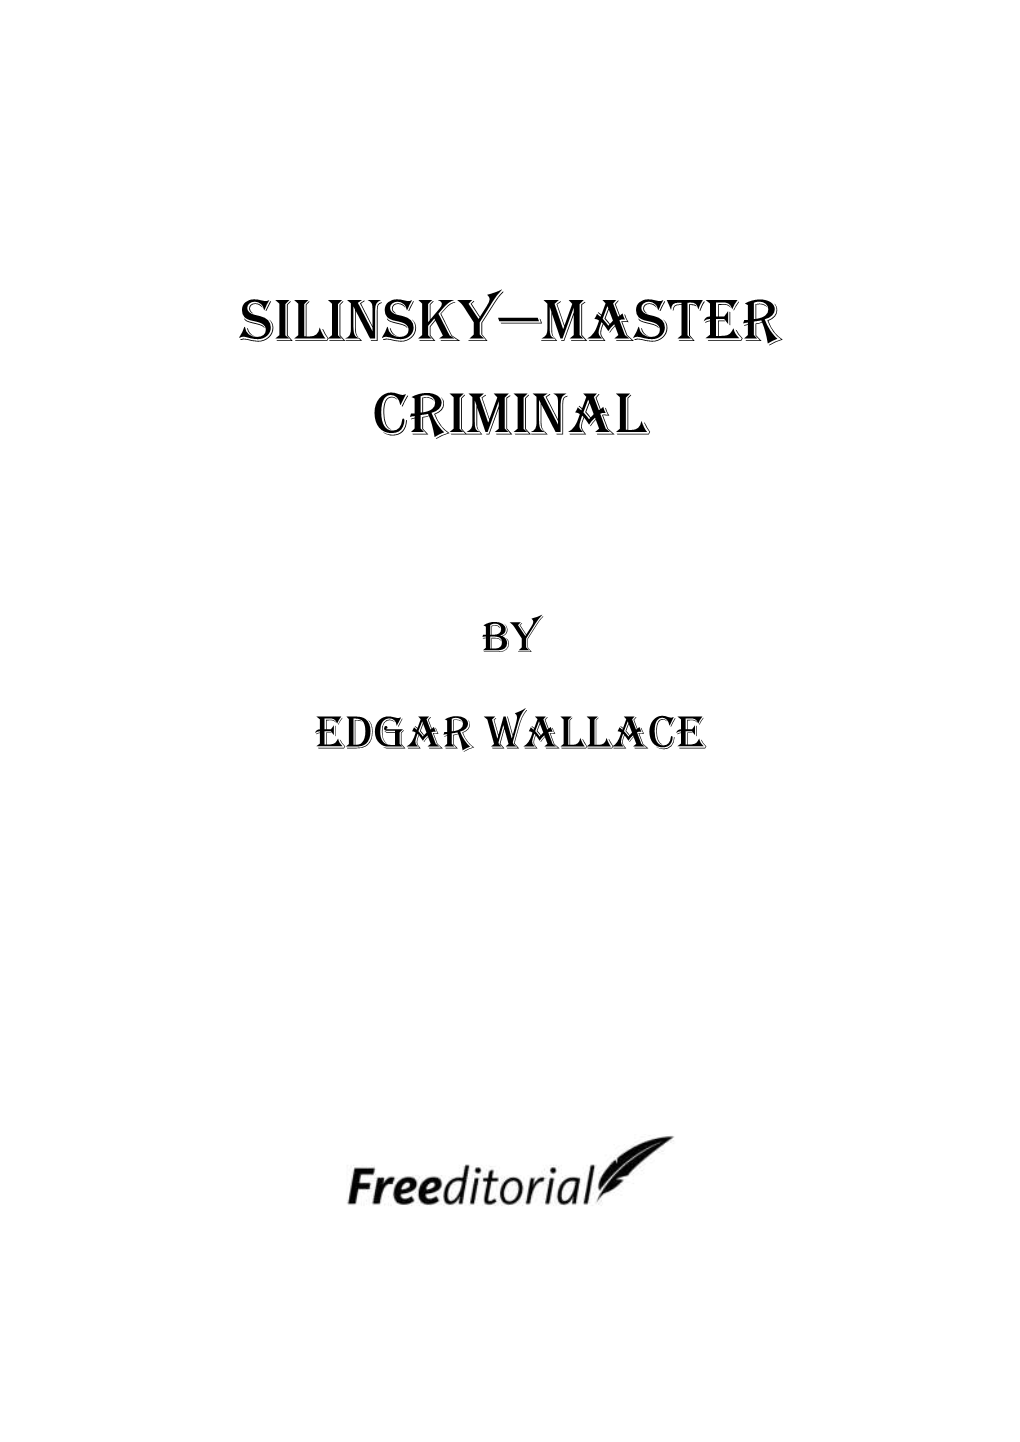 Silinsky—Master Criminal